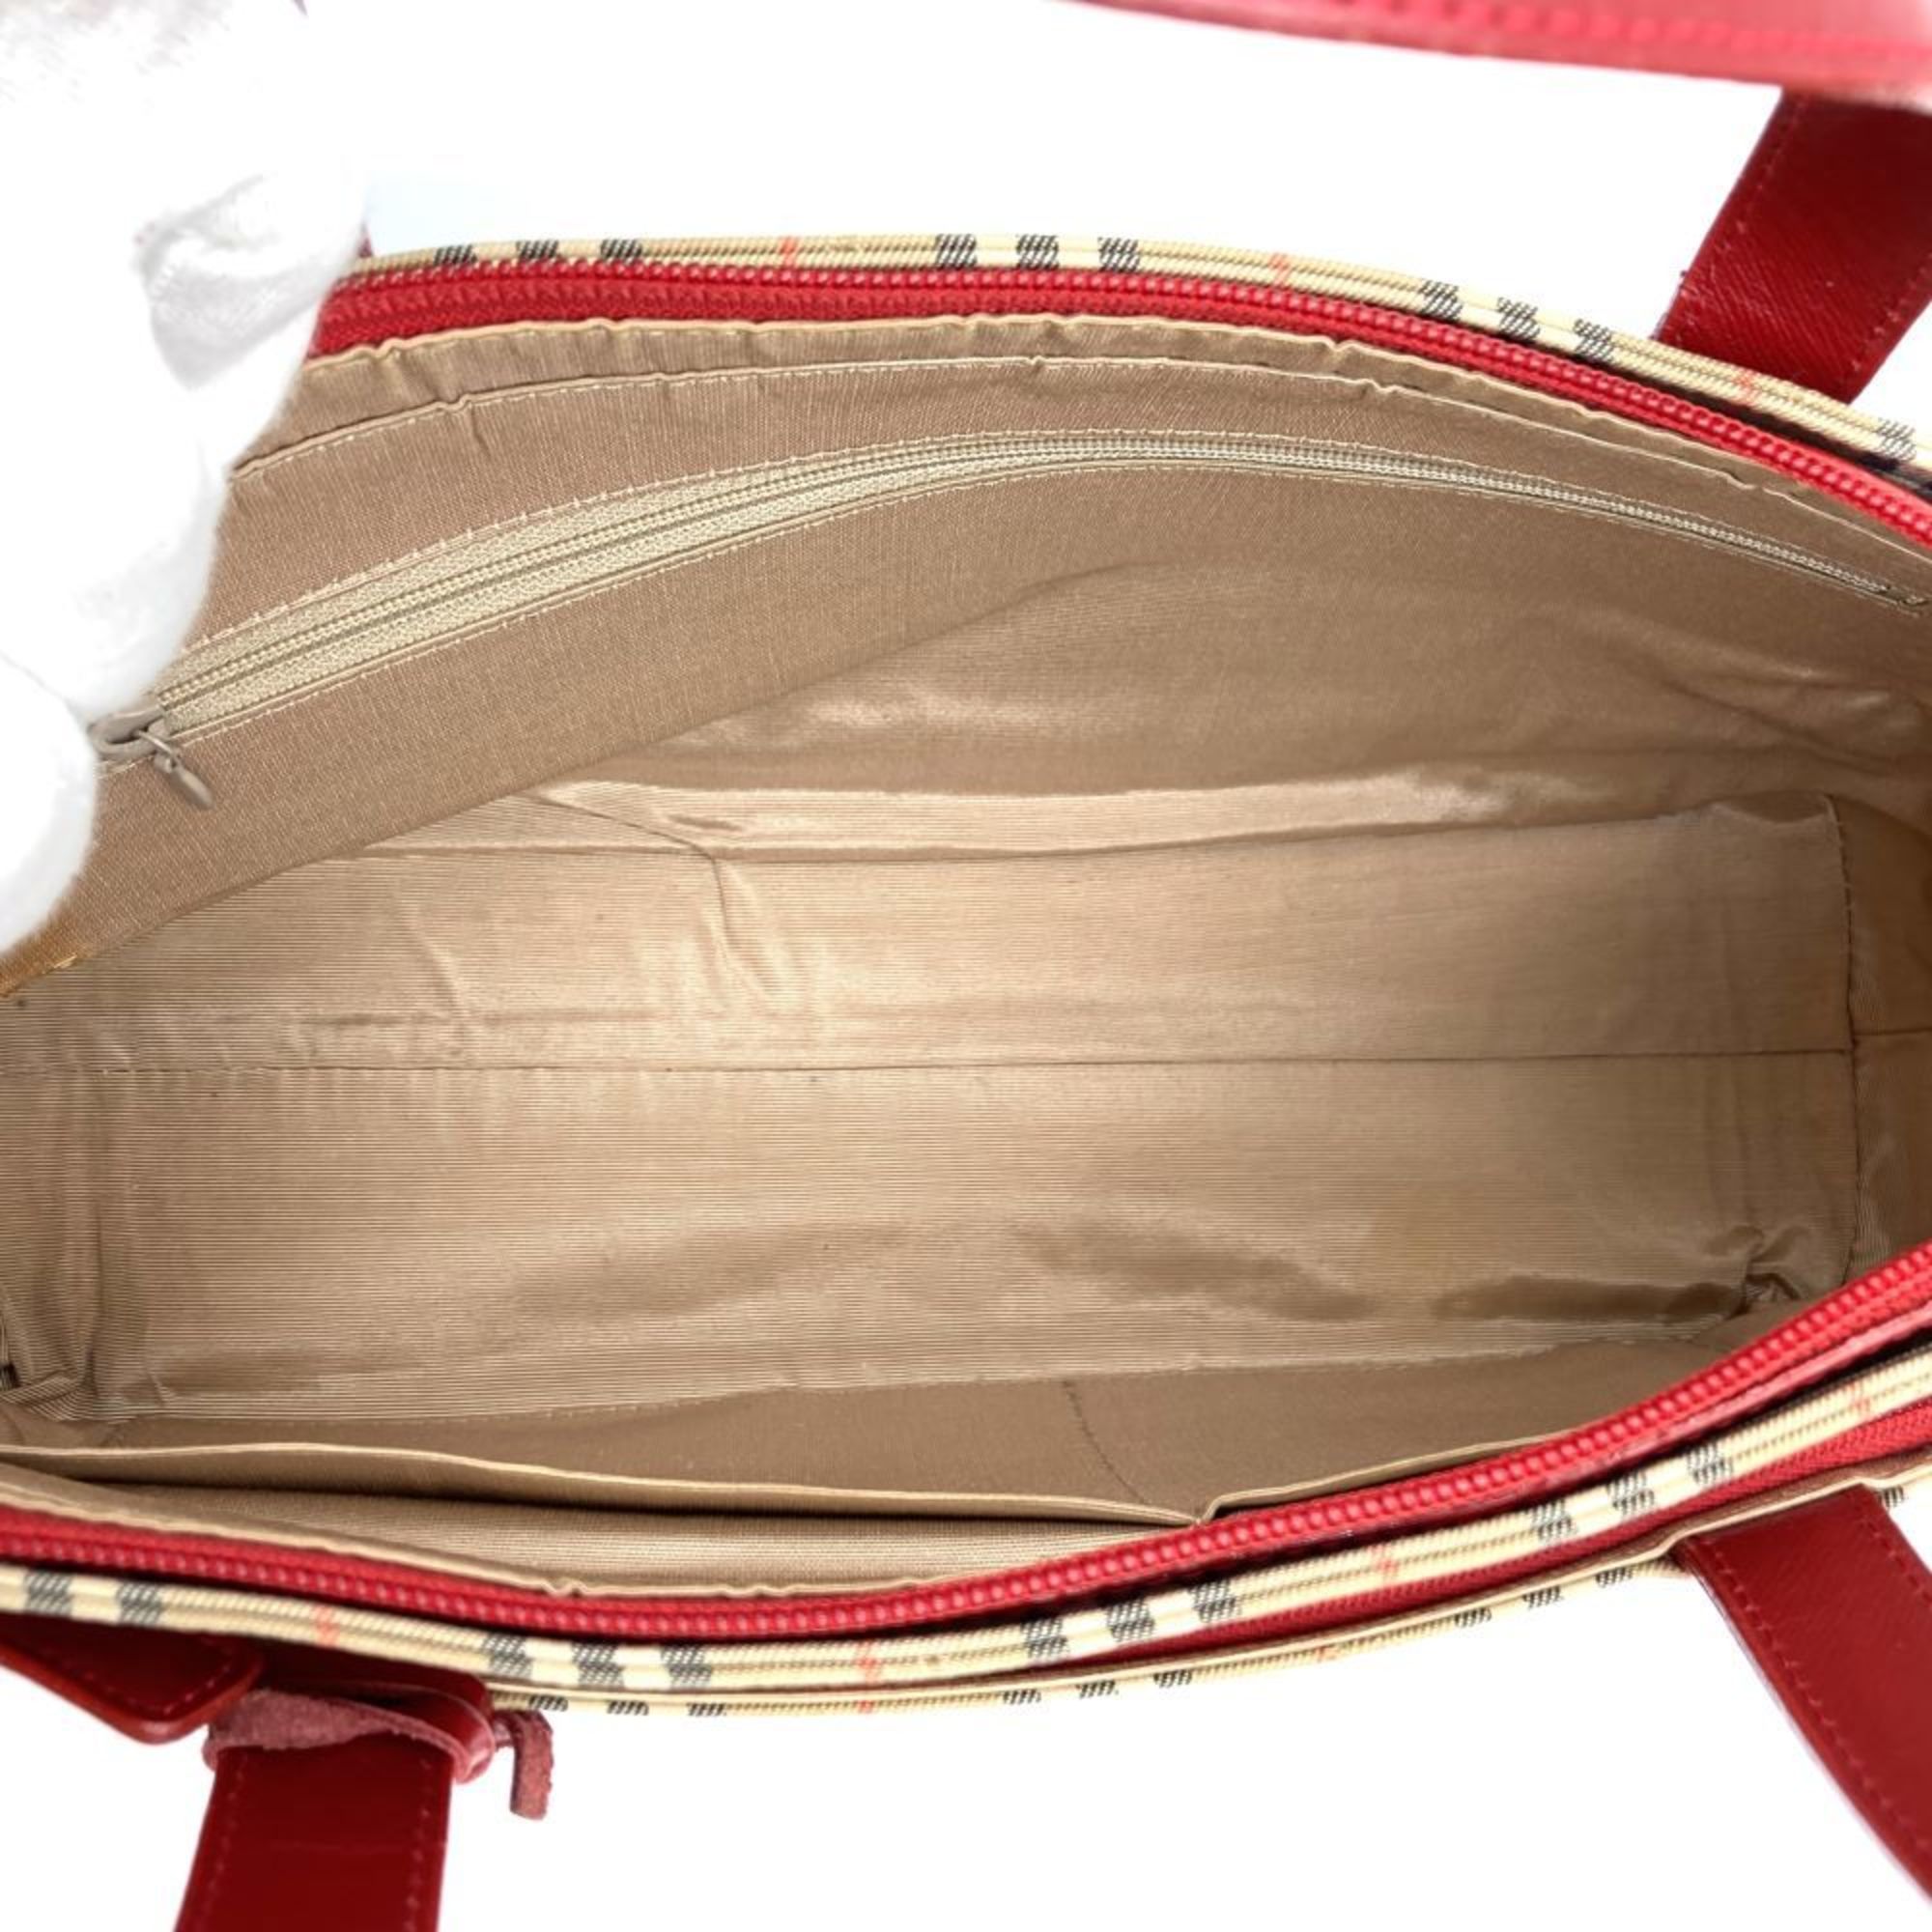 Burberry Handbag Nova Check Shadow Horse Red Canvas Women's BURBERRY